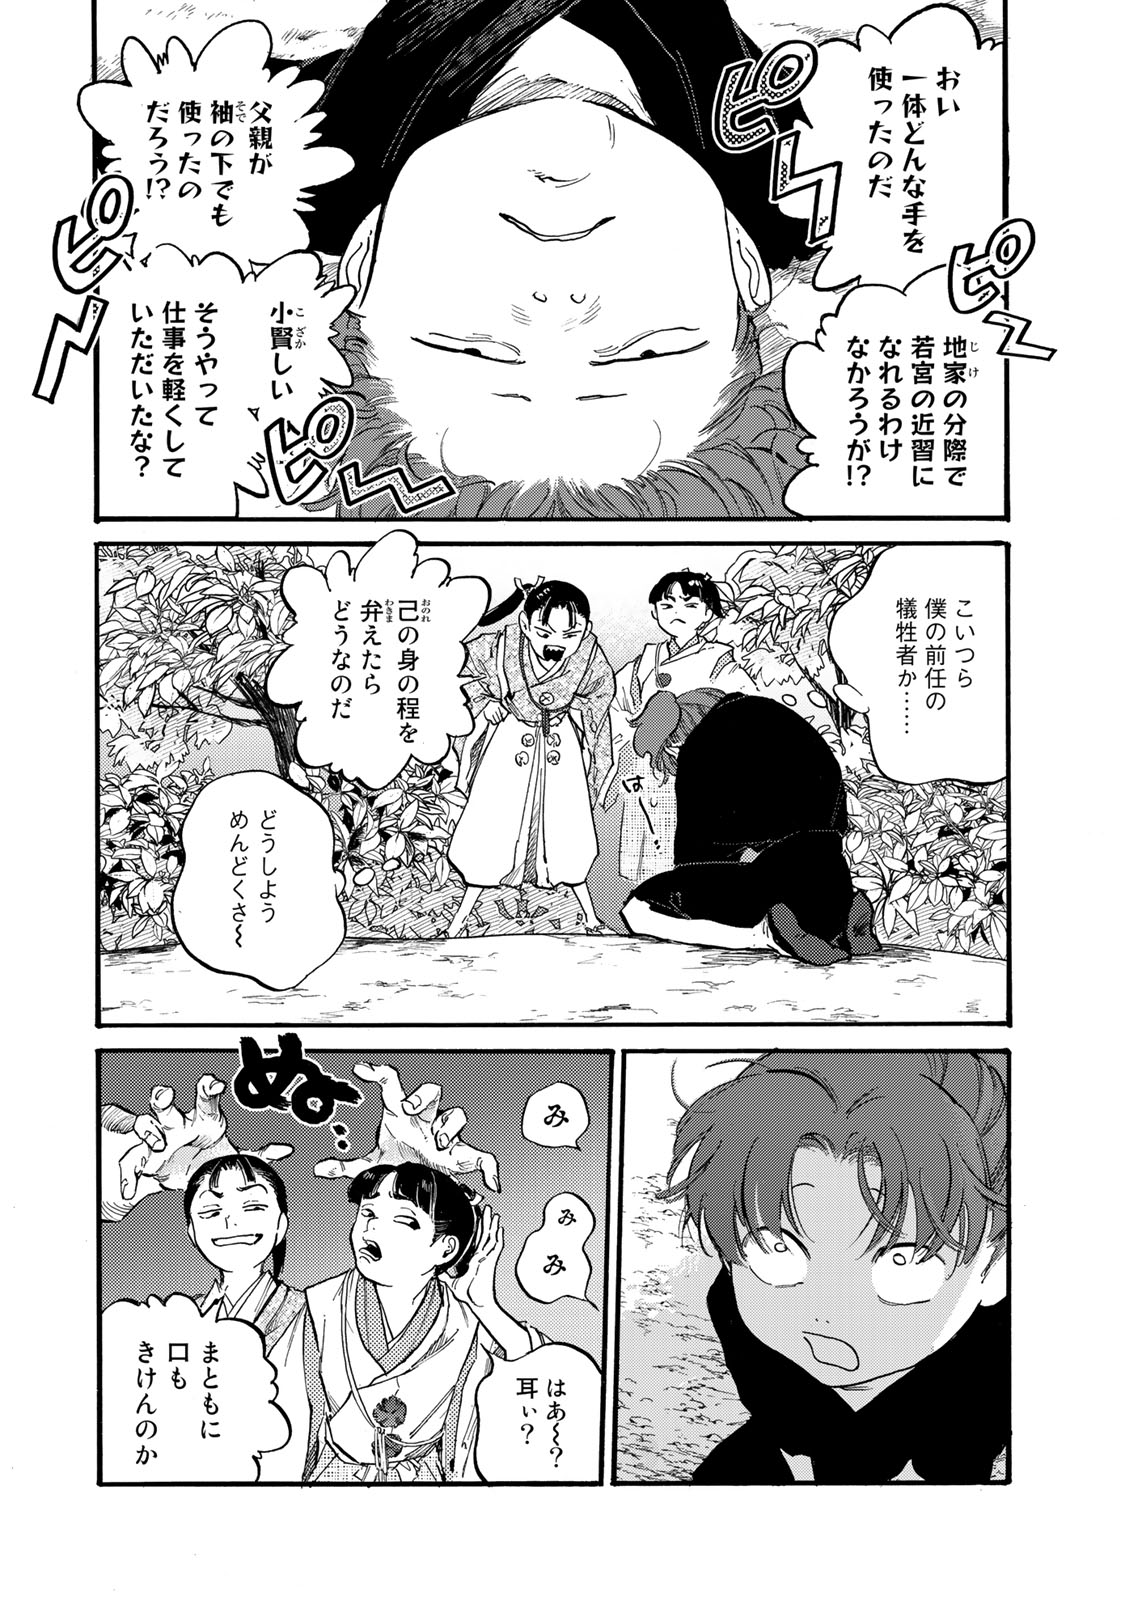 Karasu wa Aruji wo Erabanai - Chapter 38 - Page 13